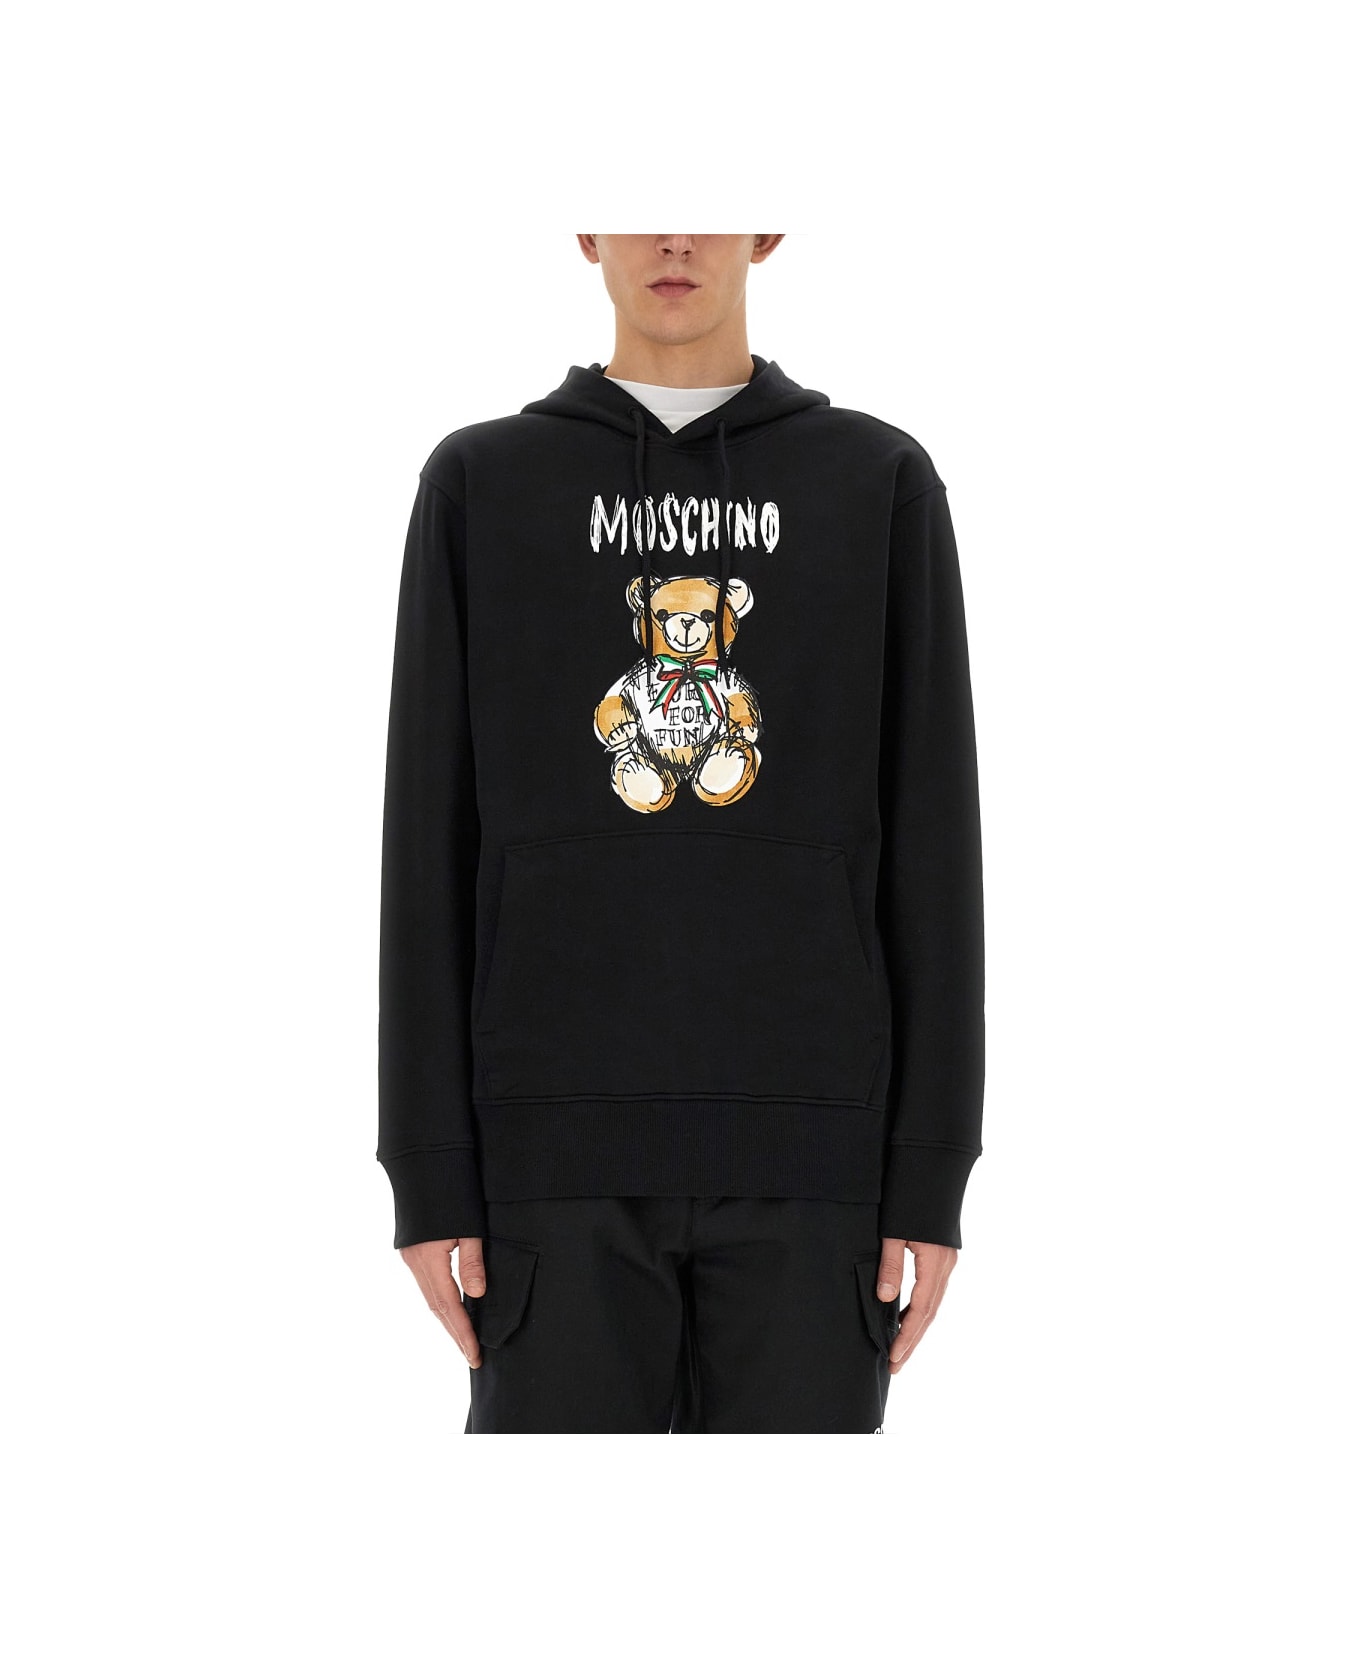 Moschino "drawn Teddy Bear" Sweatshirt - BLACK